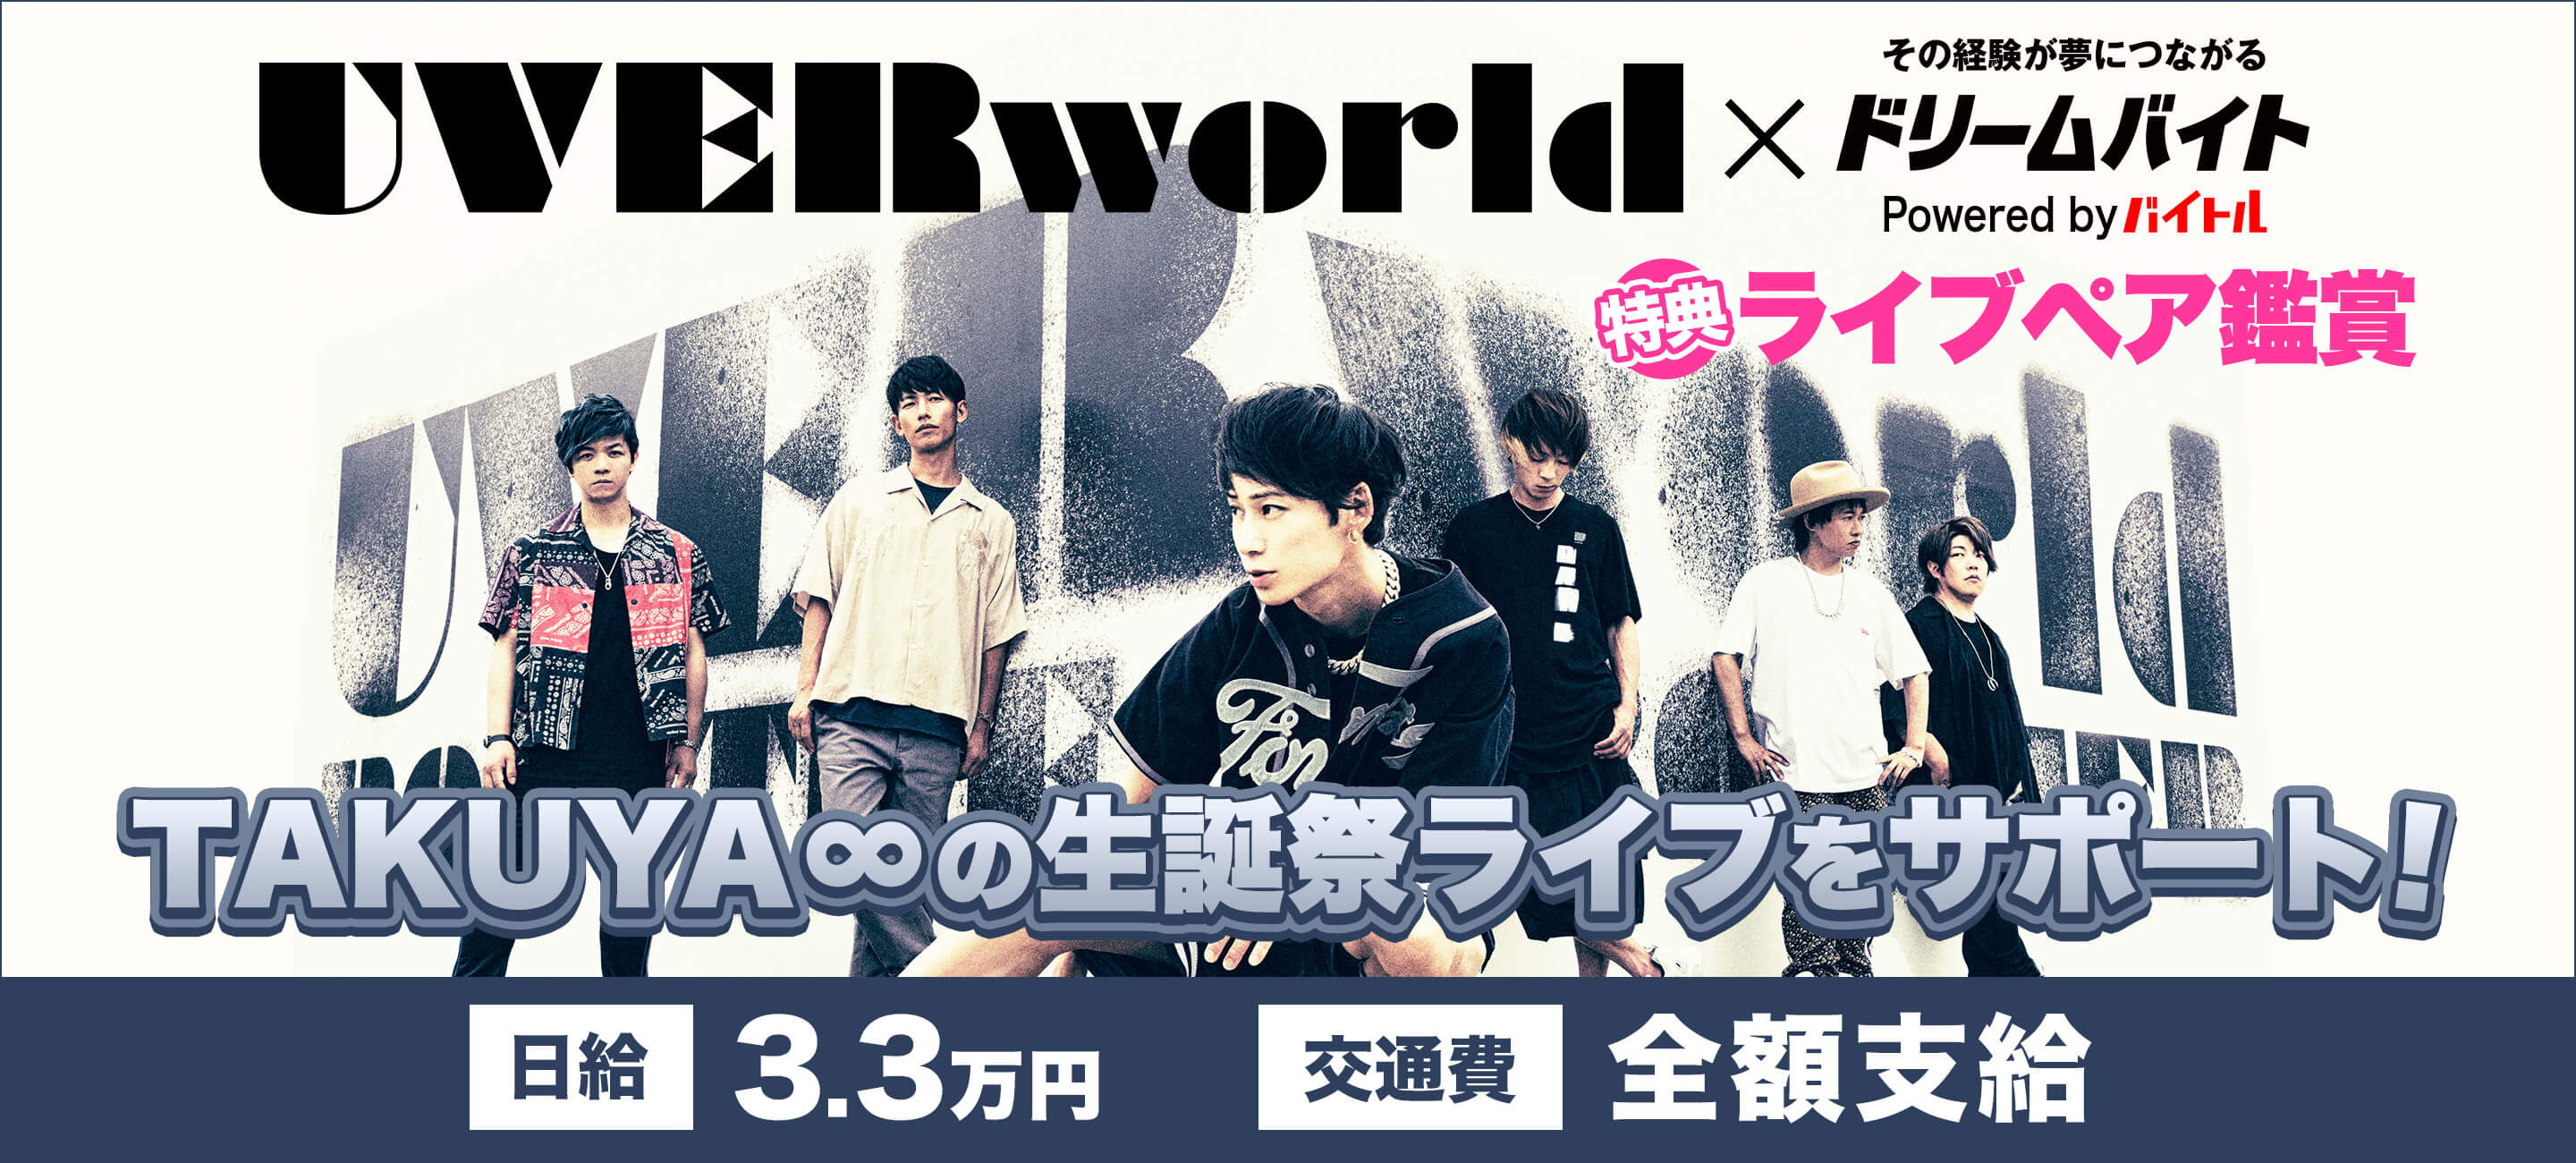 日本を代表する大人気ロックバンドuverworldのライブをサポートできる